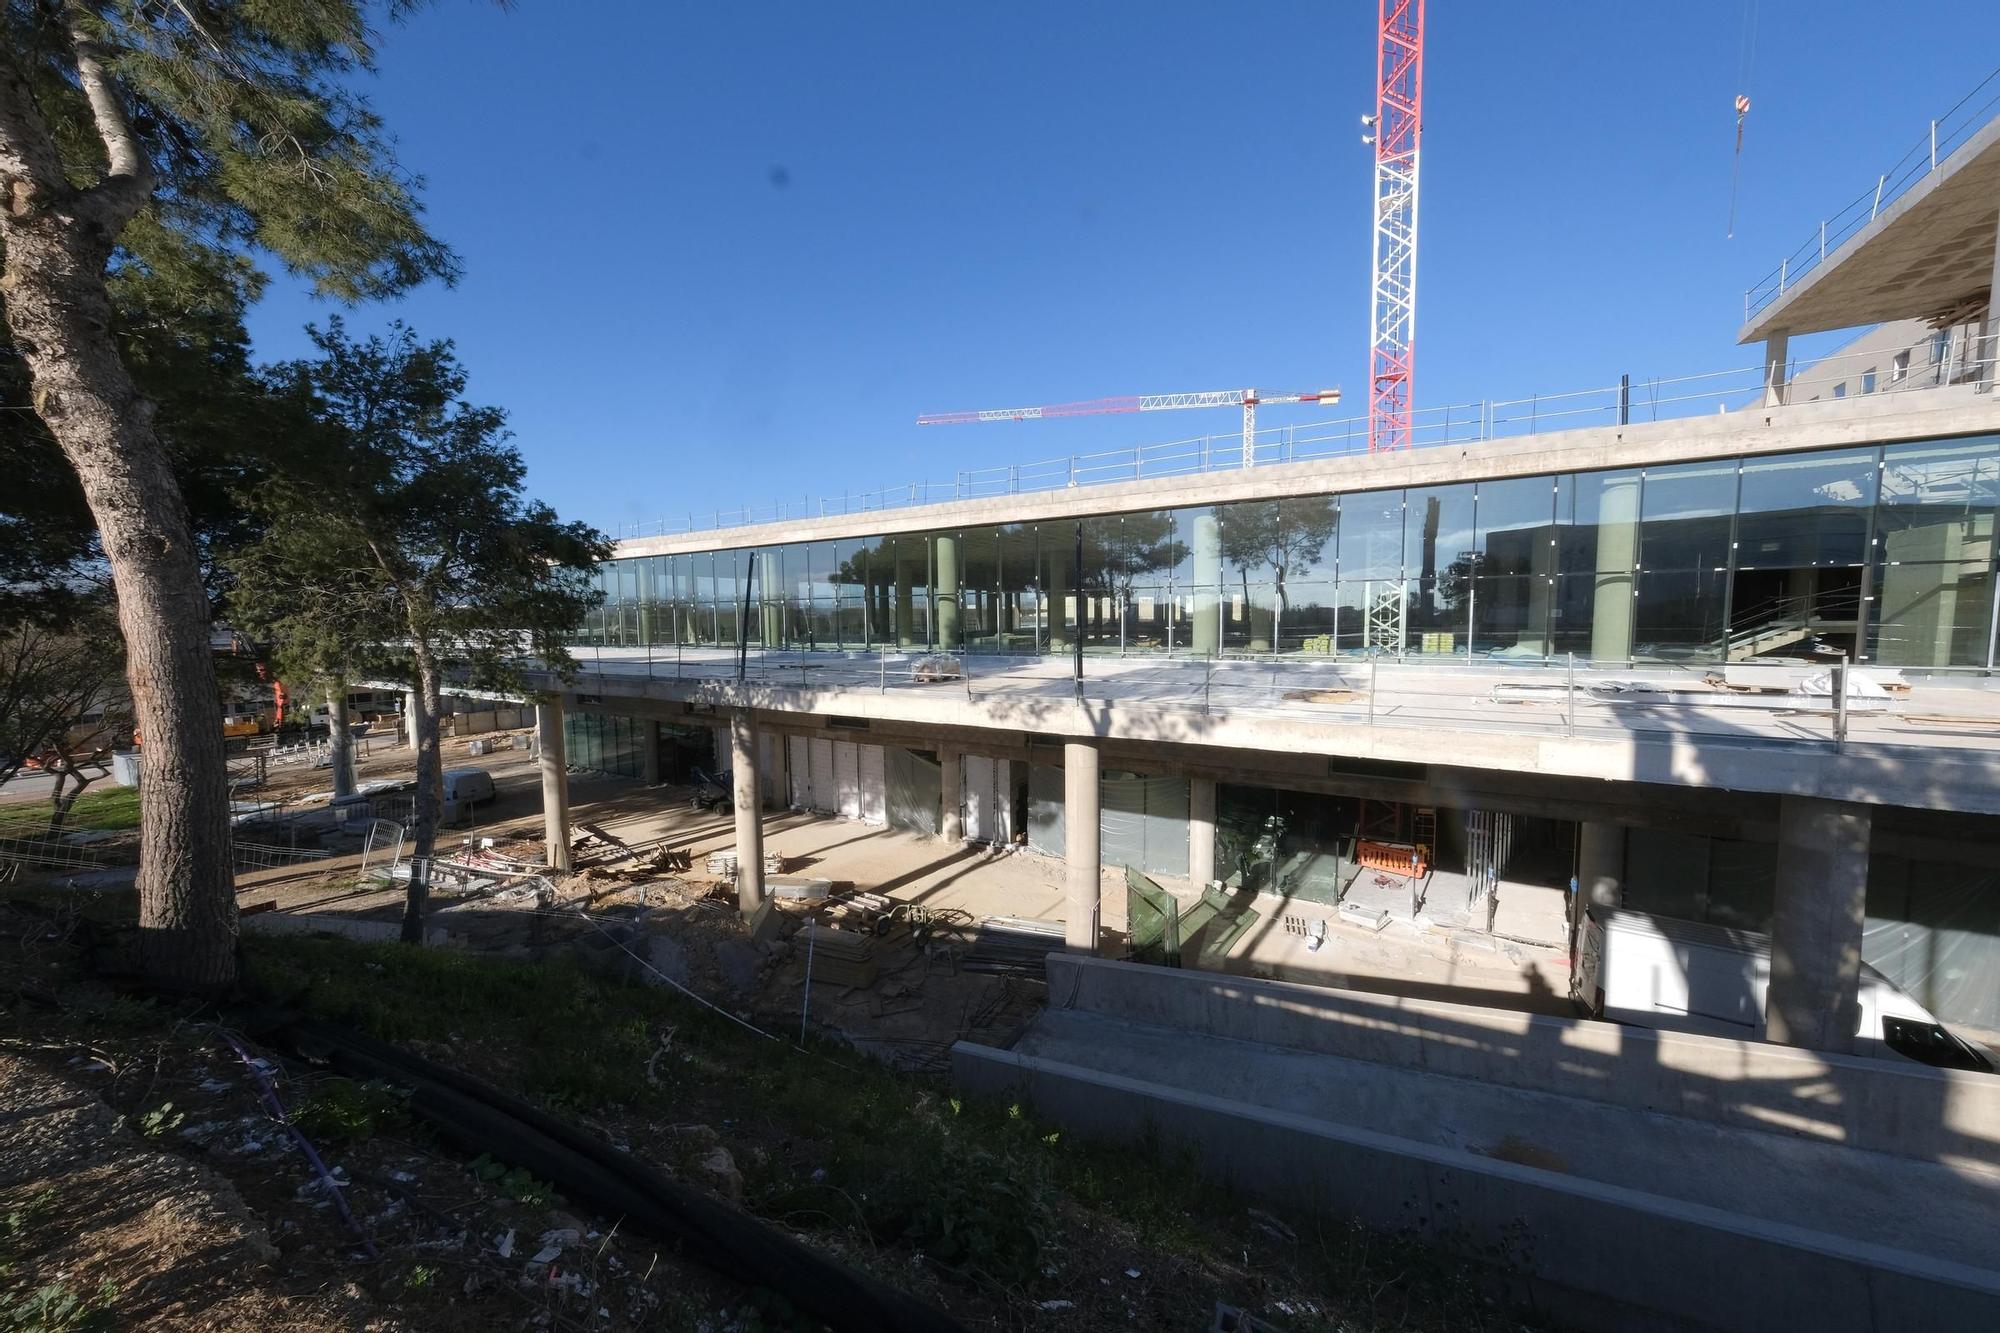 Obras en el aeropuerto de Palma: Las fotos de la nueva pasarela que une la zona nueva de la terminal y el módulo A